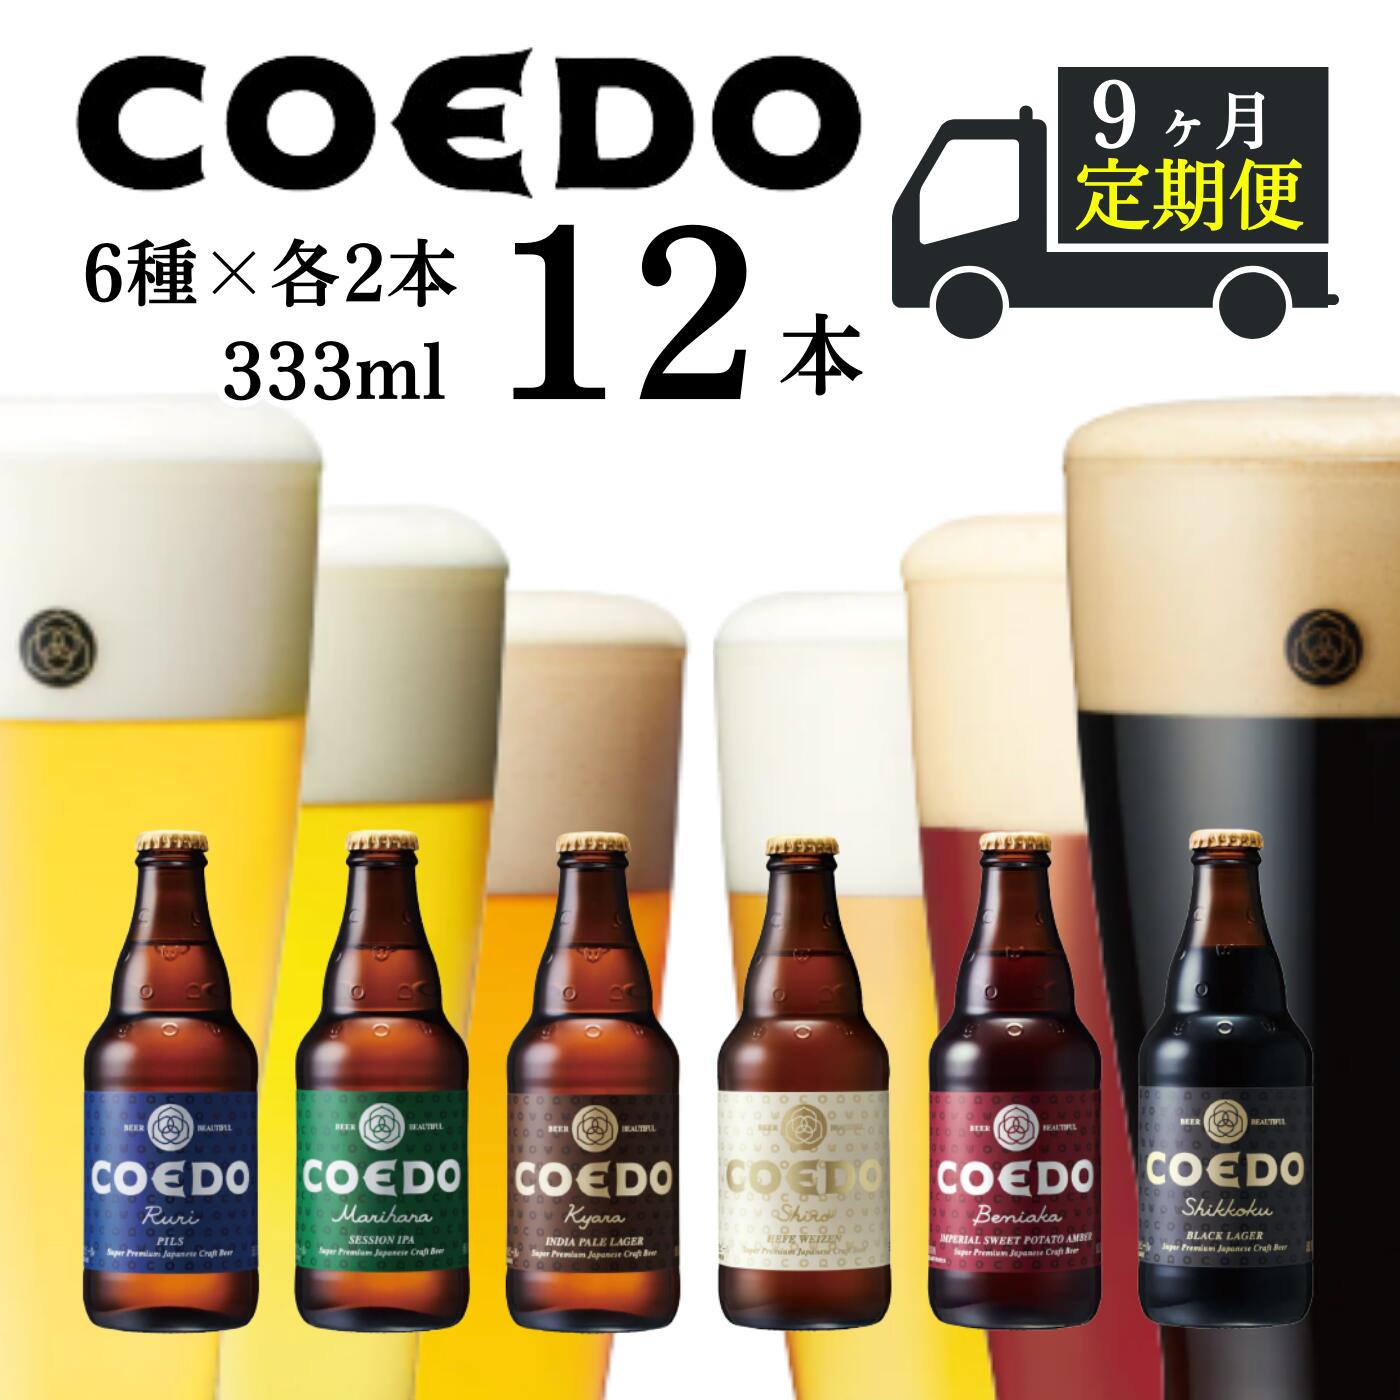  ＜9ヶ月定期便＞コエドビール 瓶6種類12本セット (333ml×12本)計3996ml